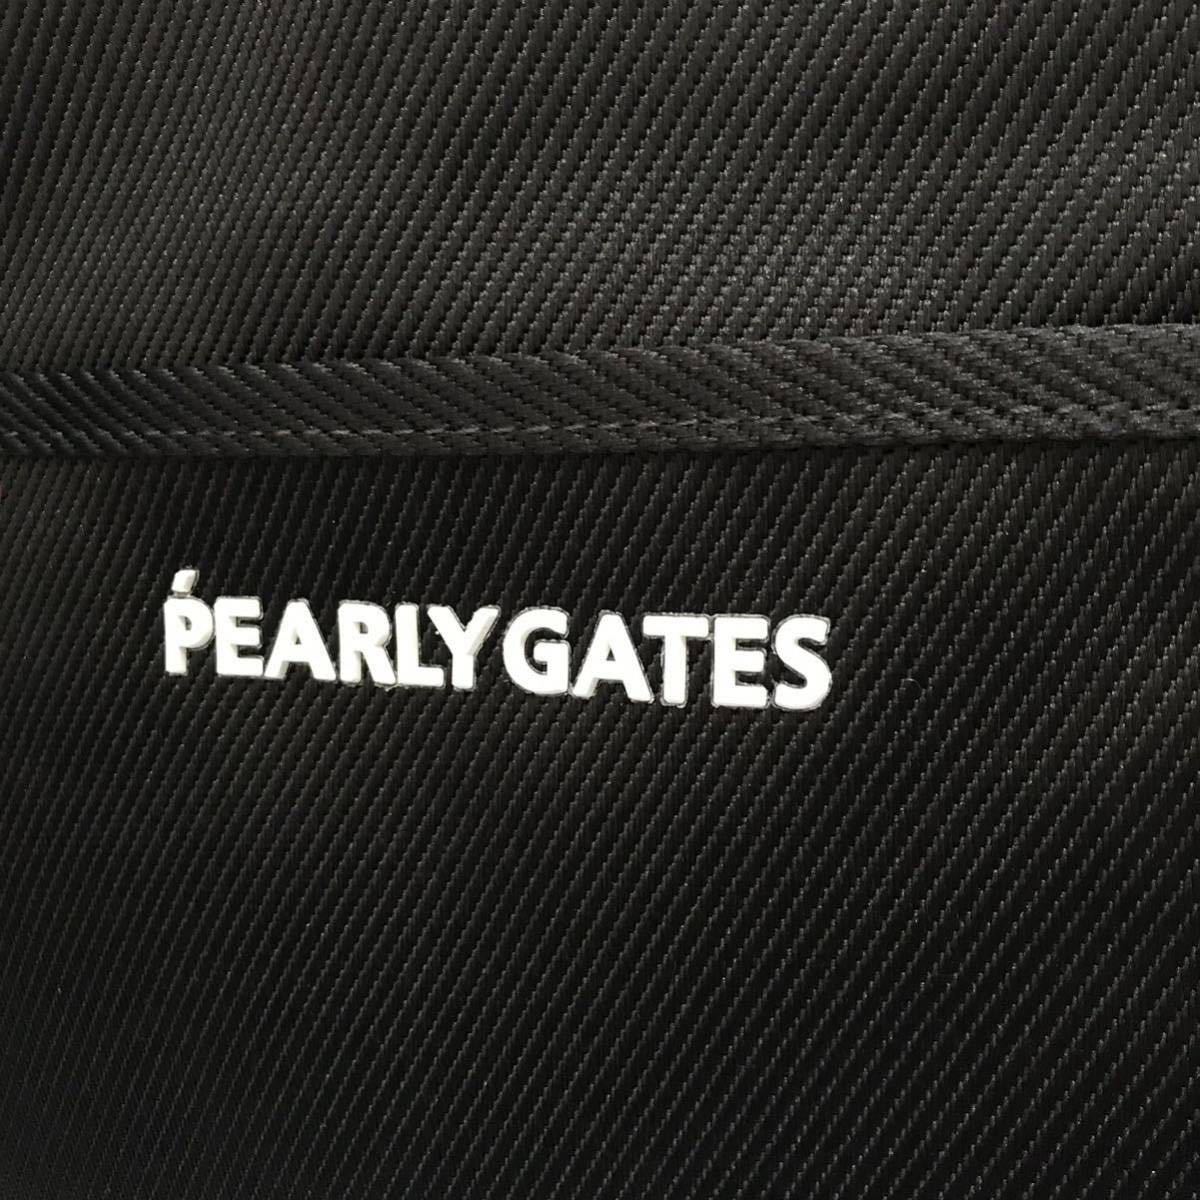 新品 正規品 紺ネイビー PEARLY GATES 【定番】ロッカーバッグ トートバッグ (UNISEX) 男女兼用モデル パーリーゲイツ_画像3